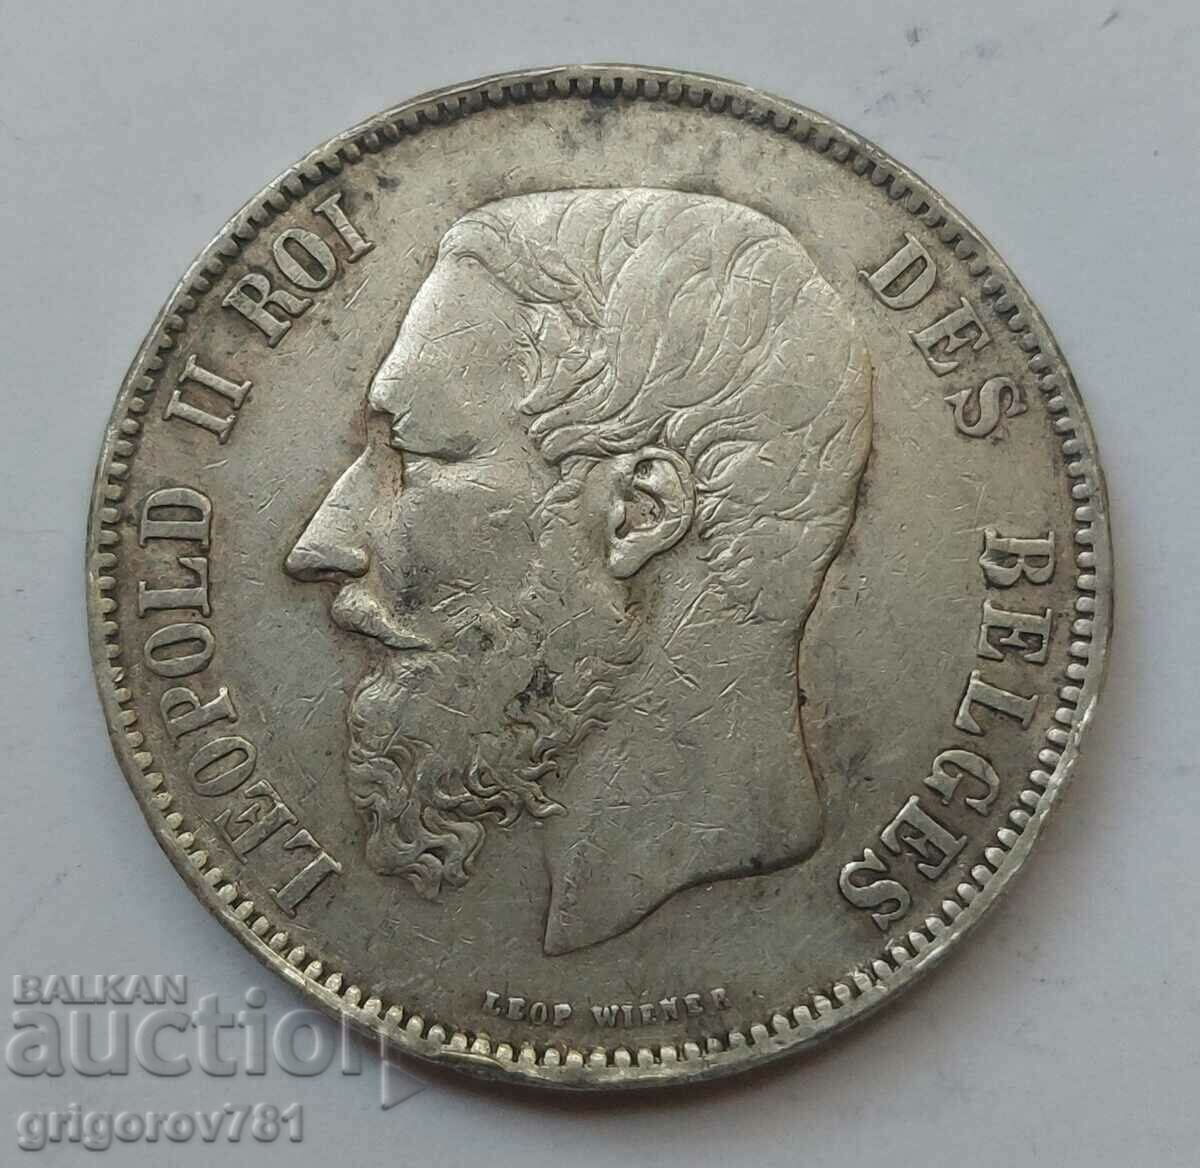 5 Francs Silver Belgium 1870 Silver Coin #168